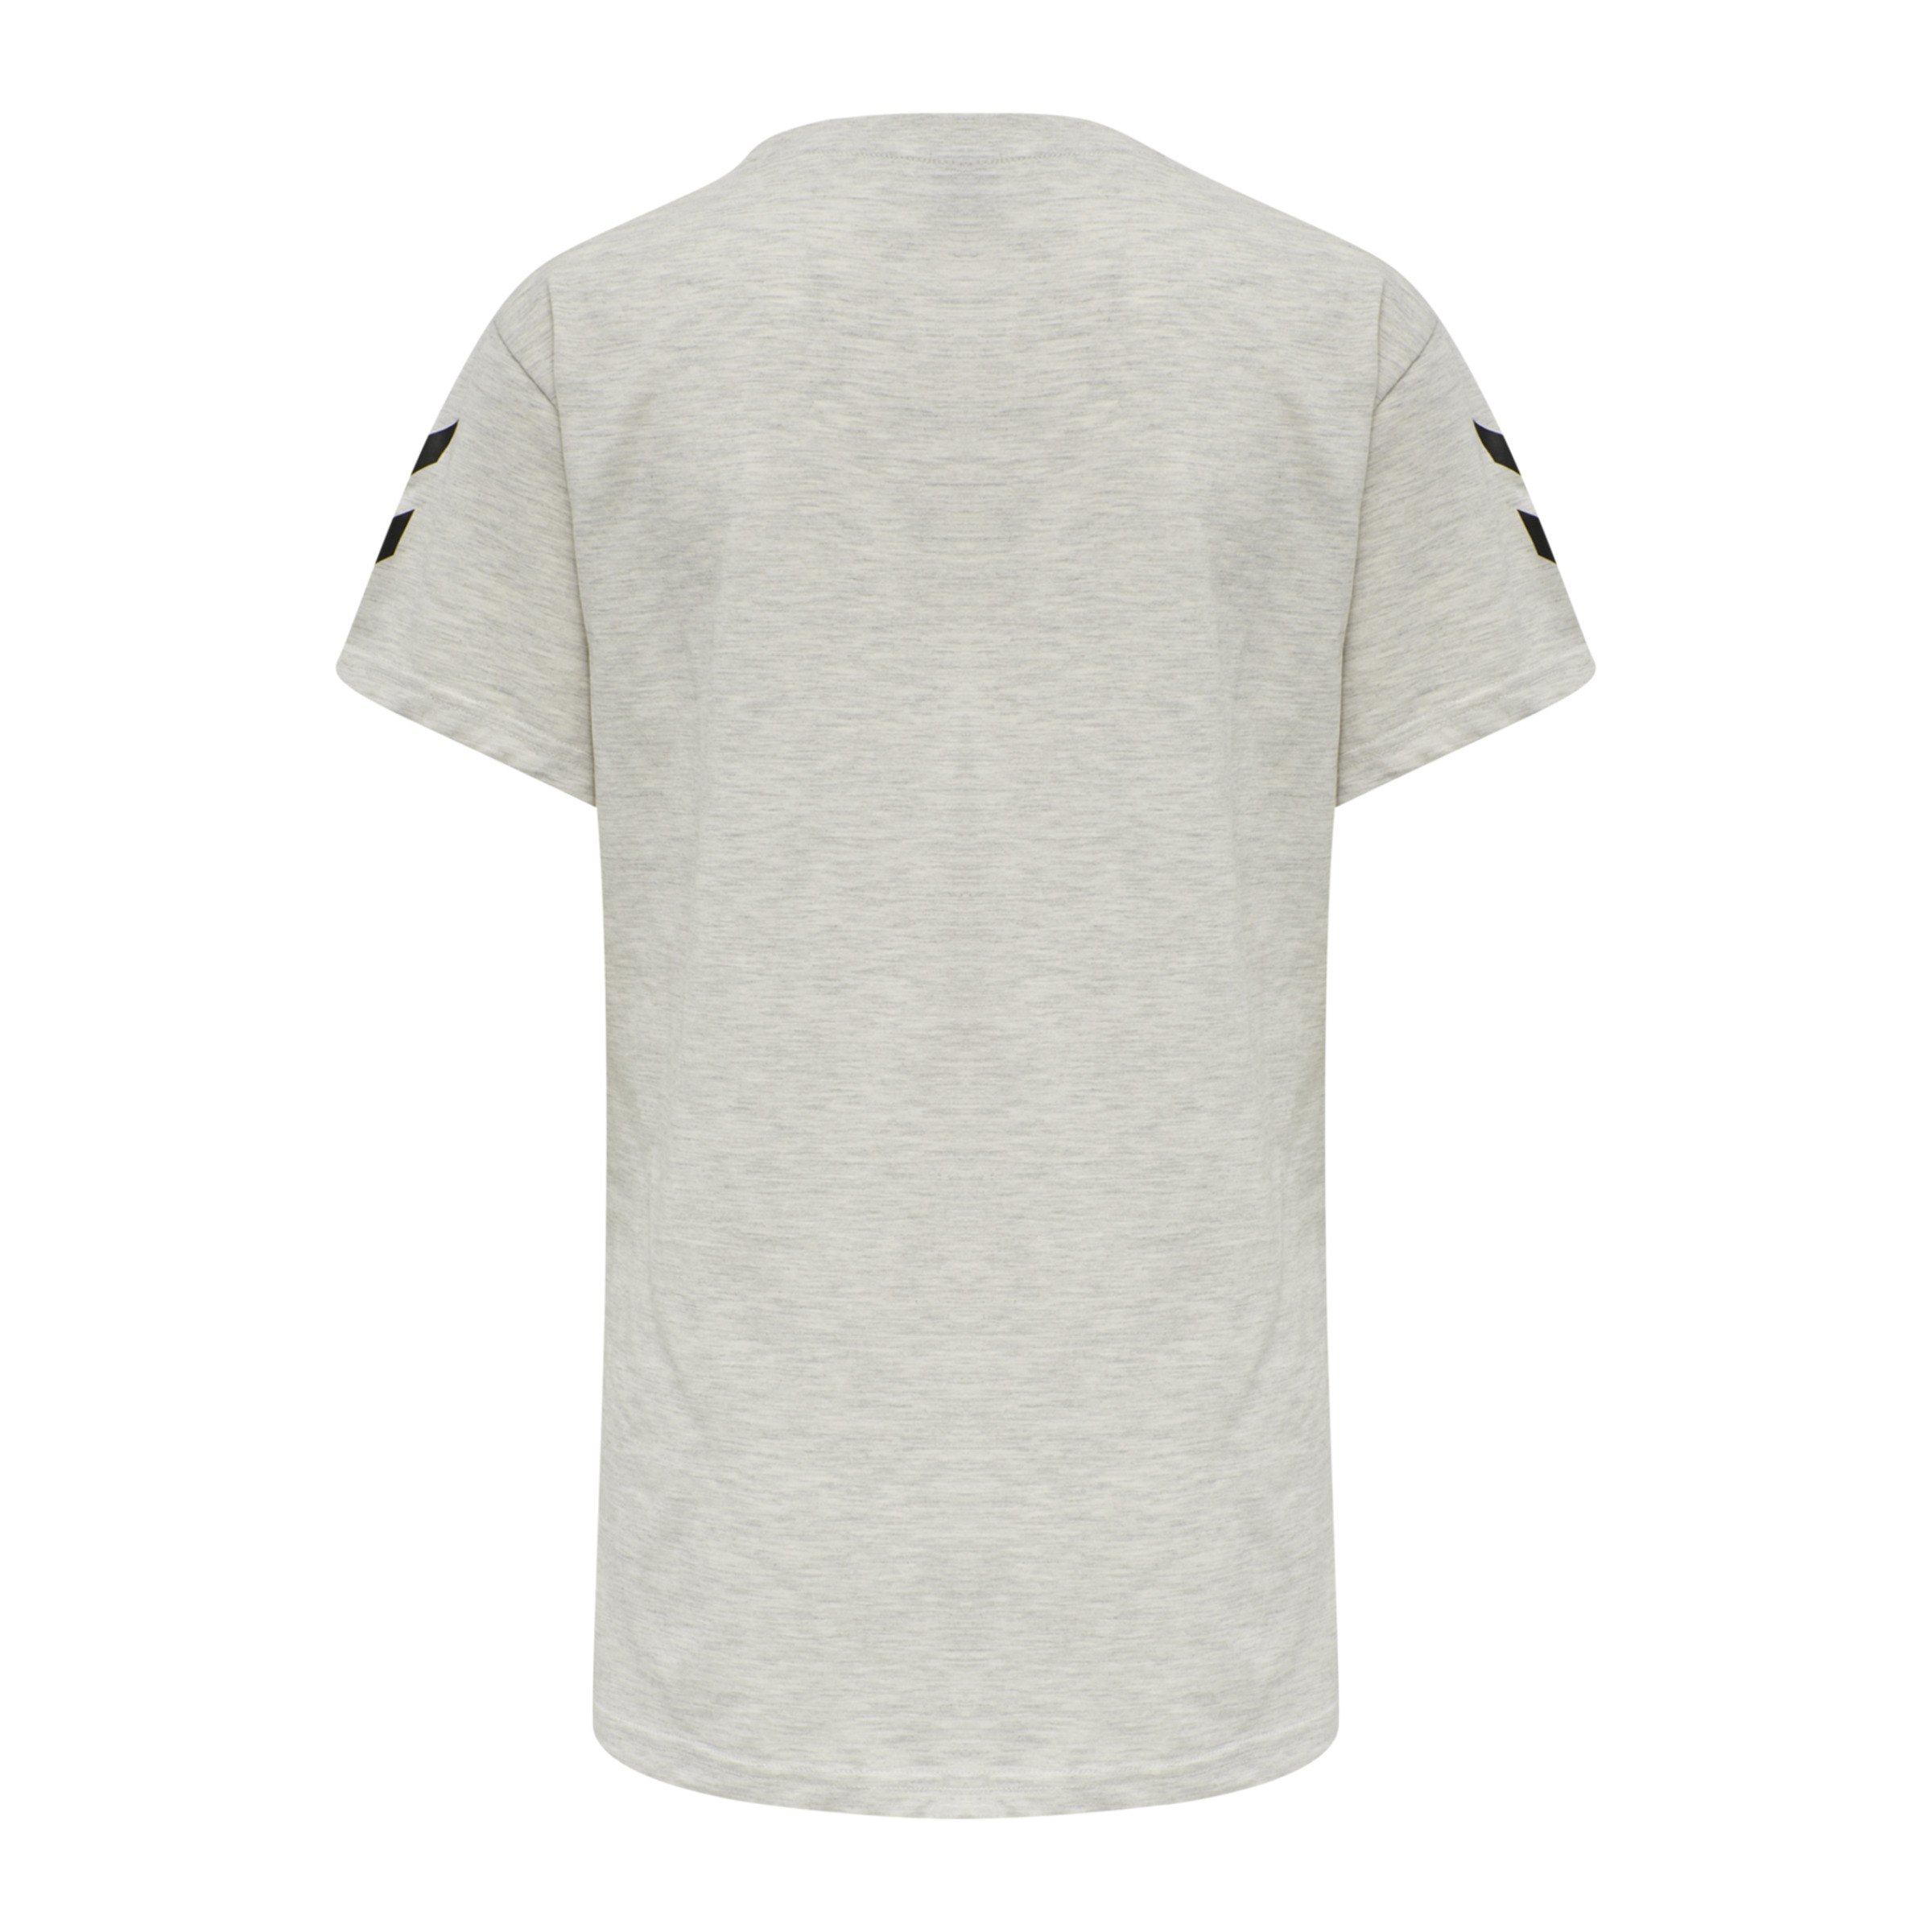 Hummel Cotton T-Shirt Damen F9158 beige Grau